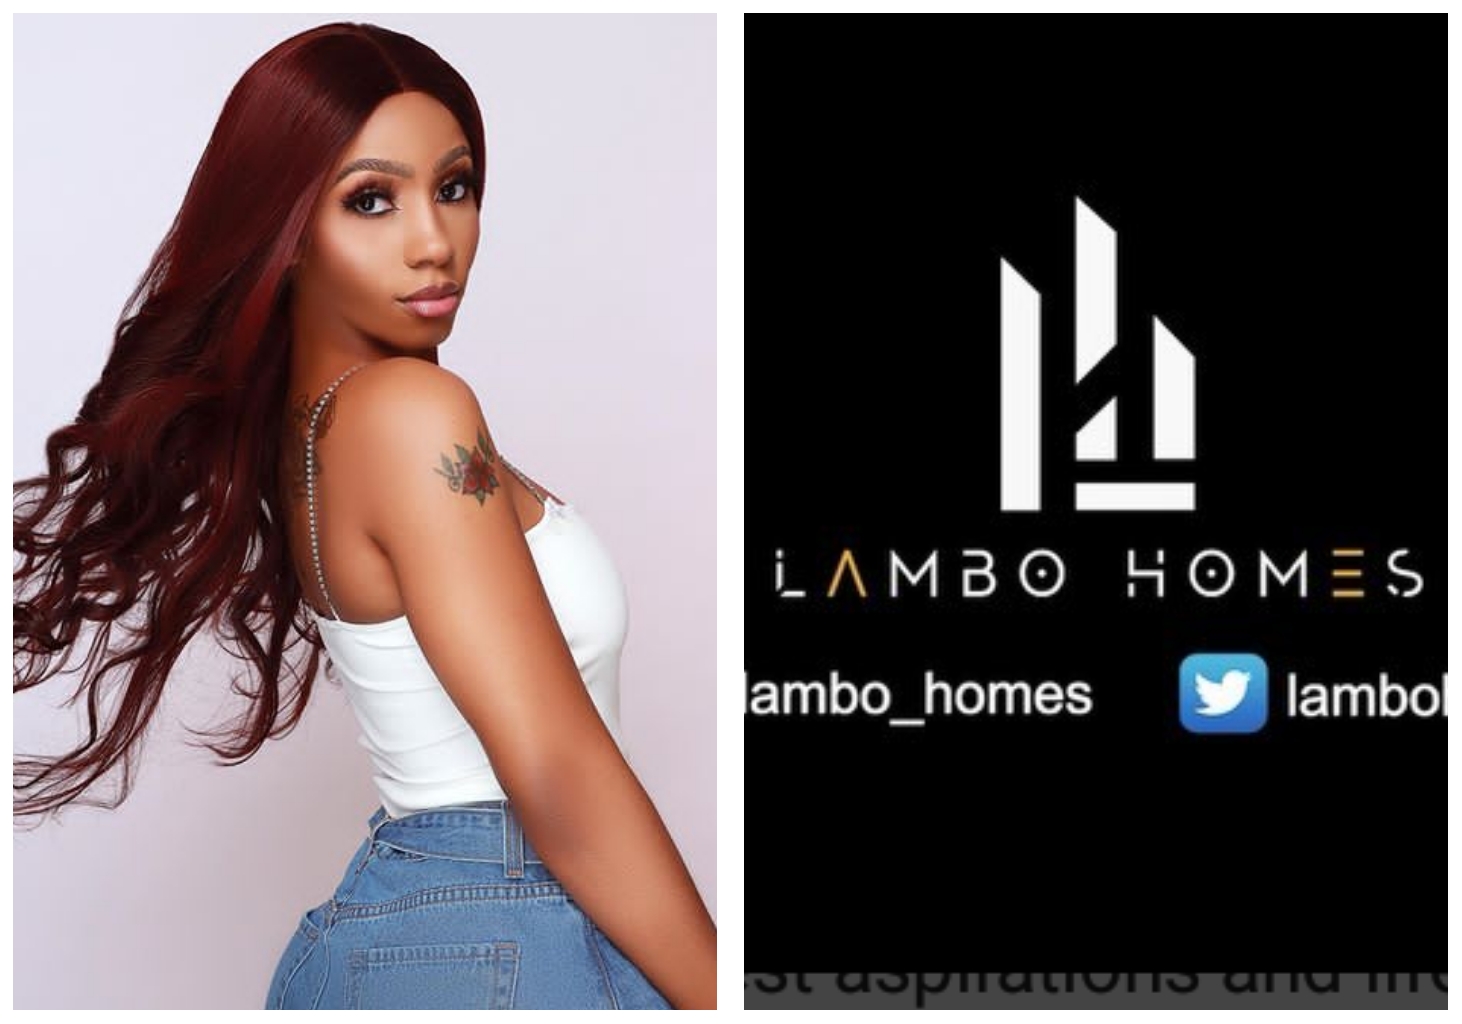 BBNaija's Mercy Eke announce launch of new brand "Lambo Homes" (Video)